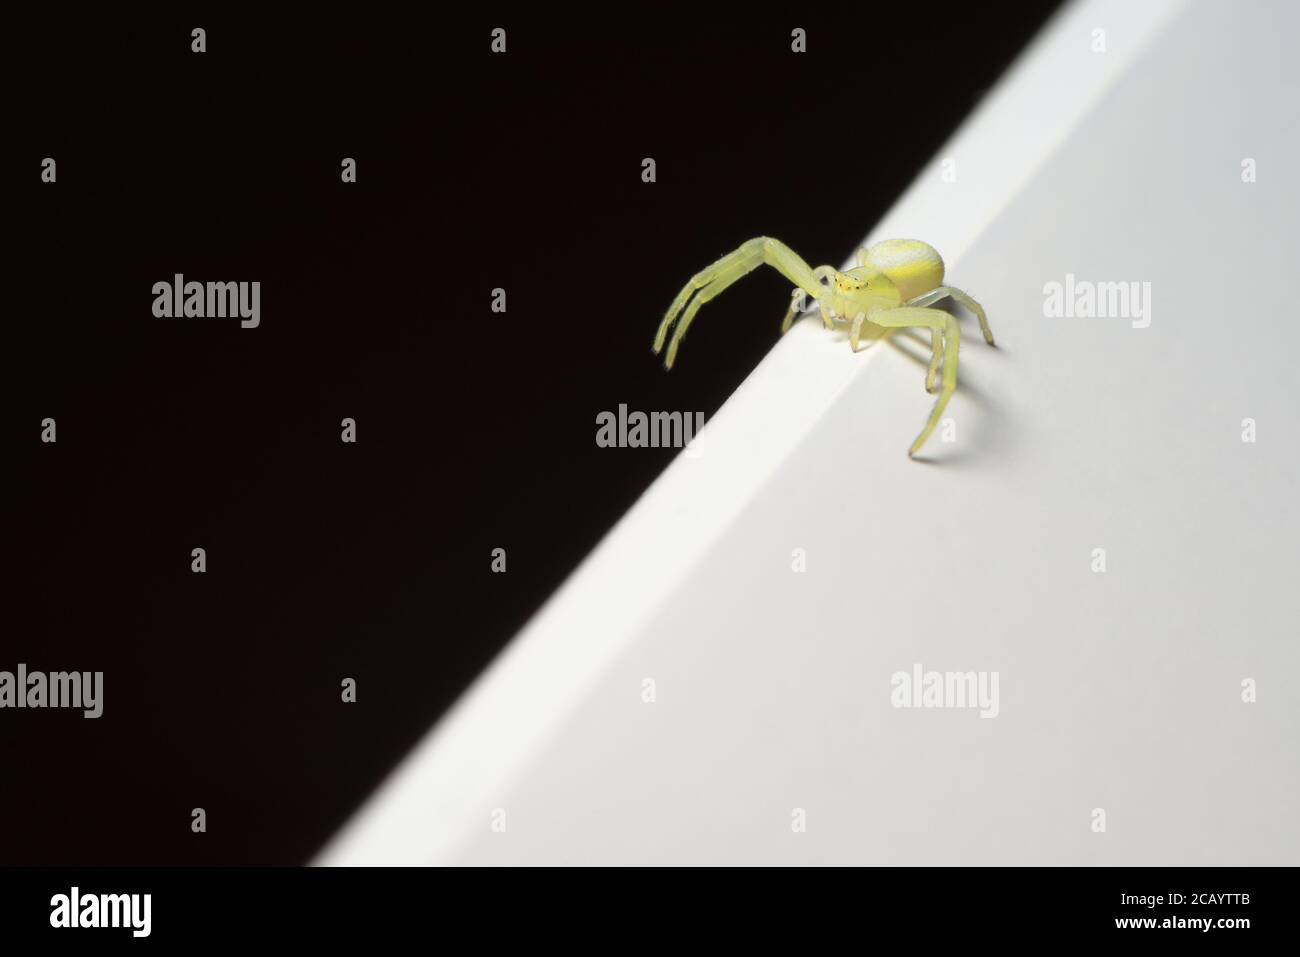 Scène abstraite, petite araignée jaune à pieds noirs explore la division entre les moitiés noire et blanche de l'image avec ses longues pattes. Copier l'espace. Banque D'Images